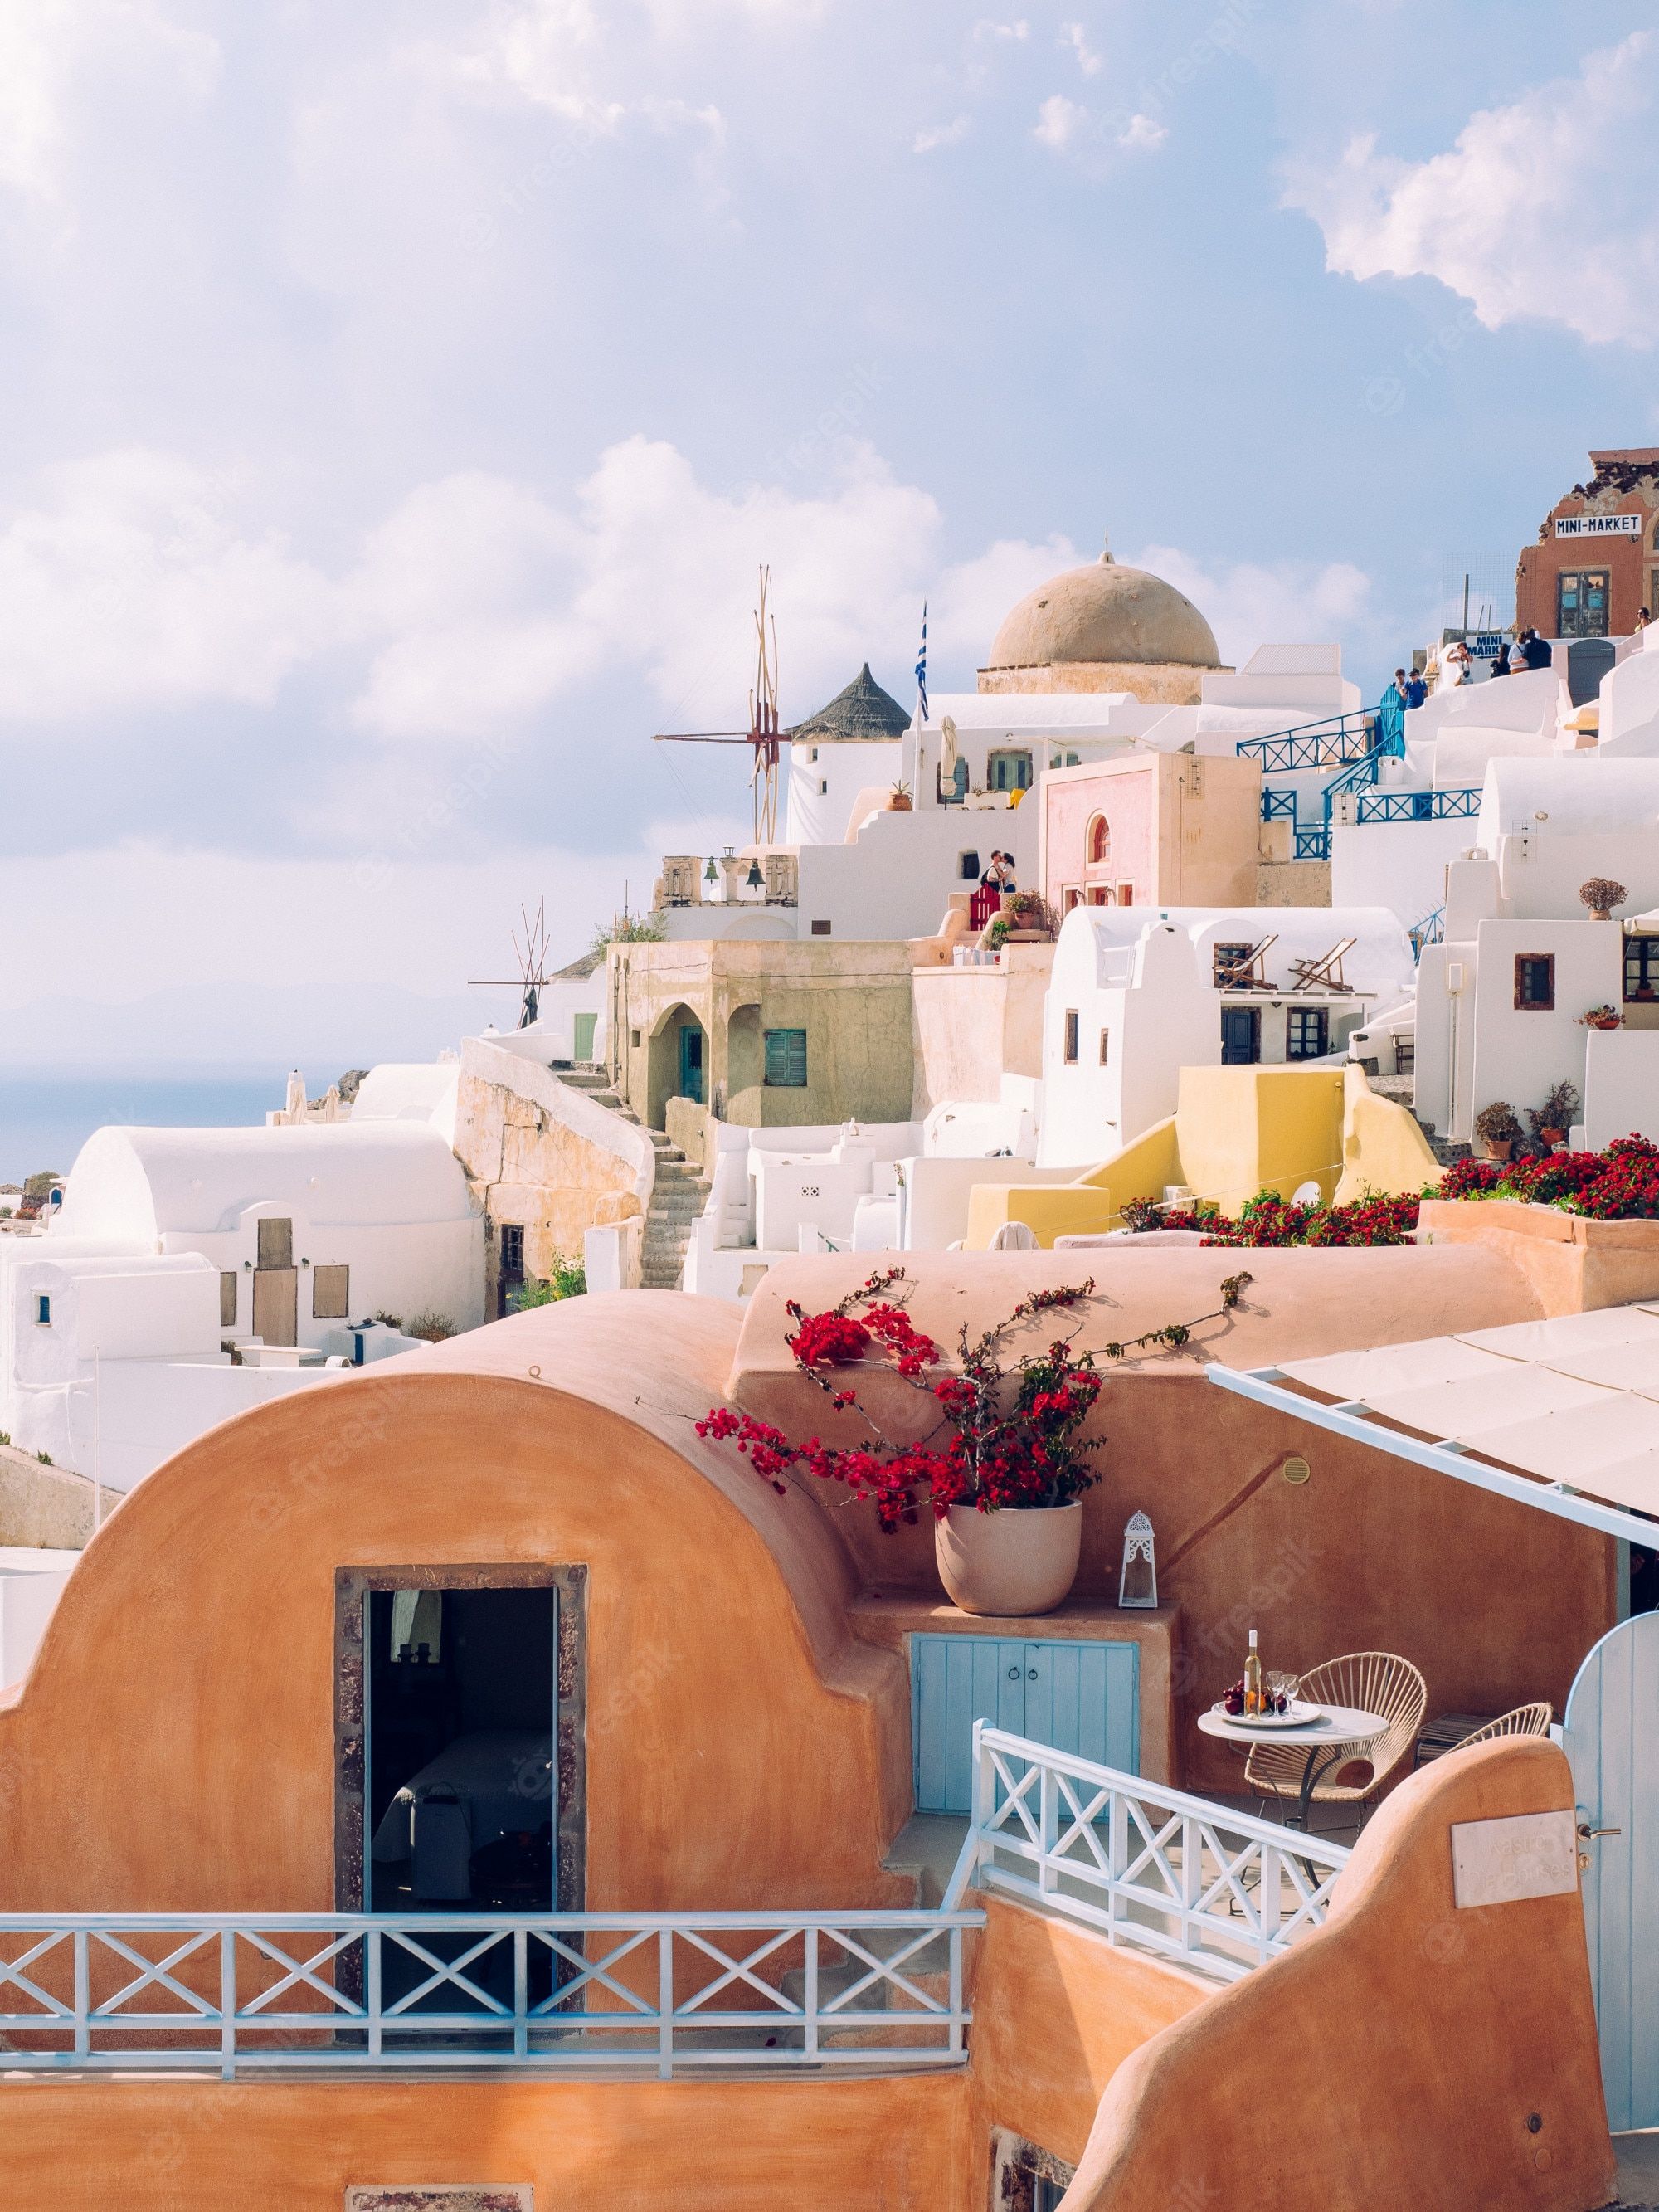  Sommer Griechenland Hintergrundbild 2000x2666. Vertikale aufnahme von schönen gebäuden in santorini insel in der ägäis, kykladen, griechenland